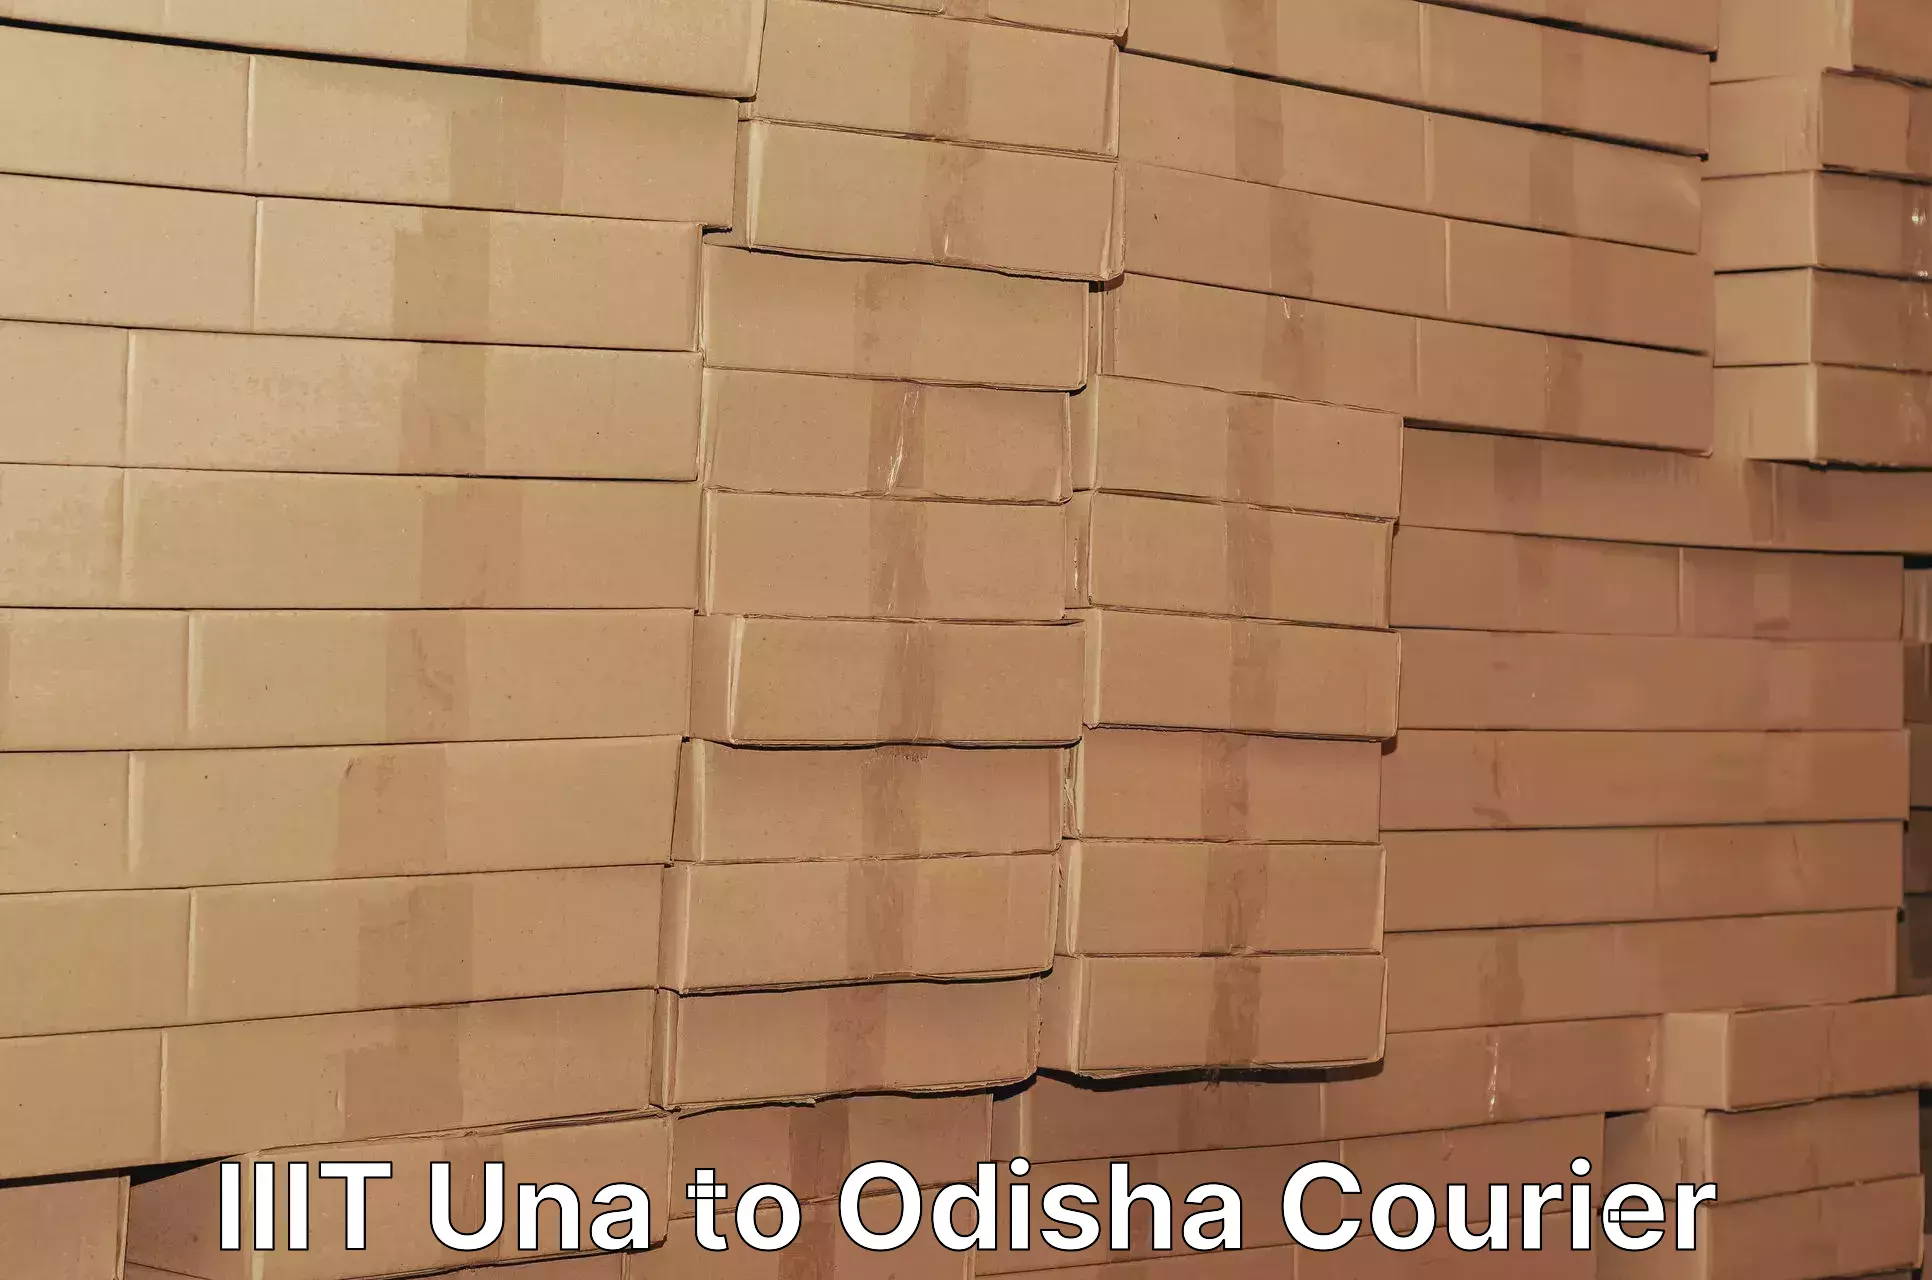 24-hour courier service IIIT Una to Odisha